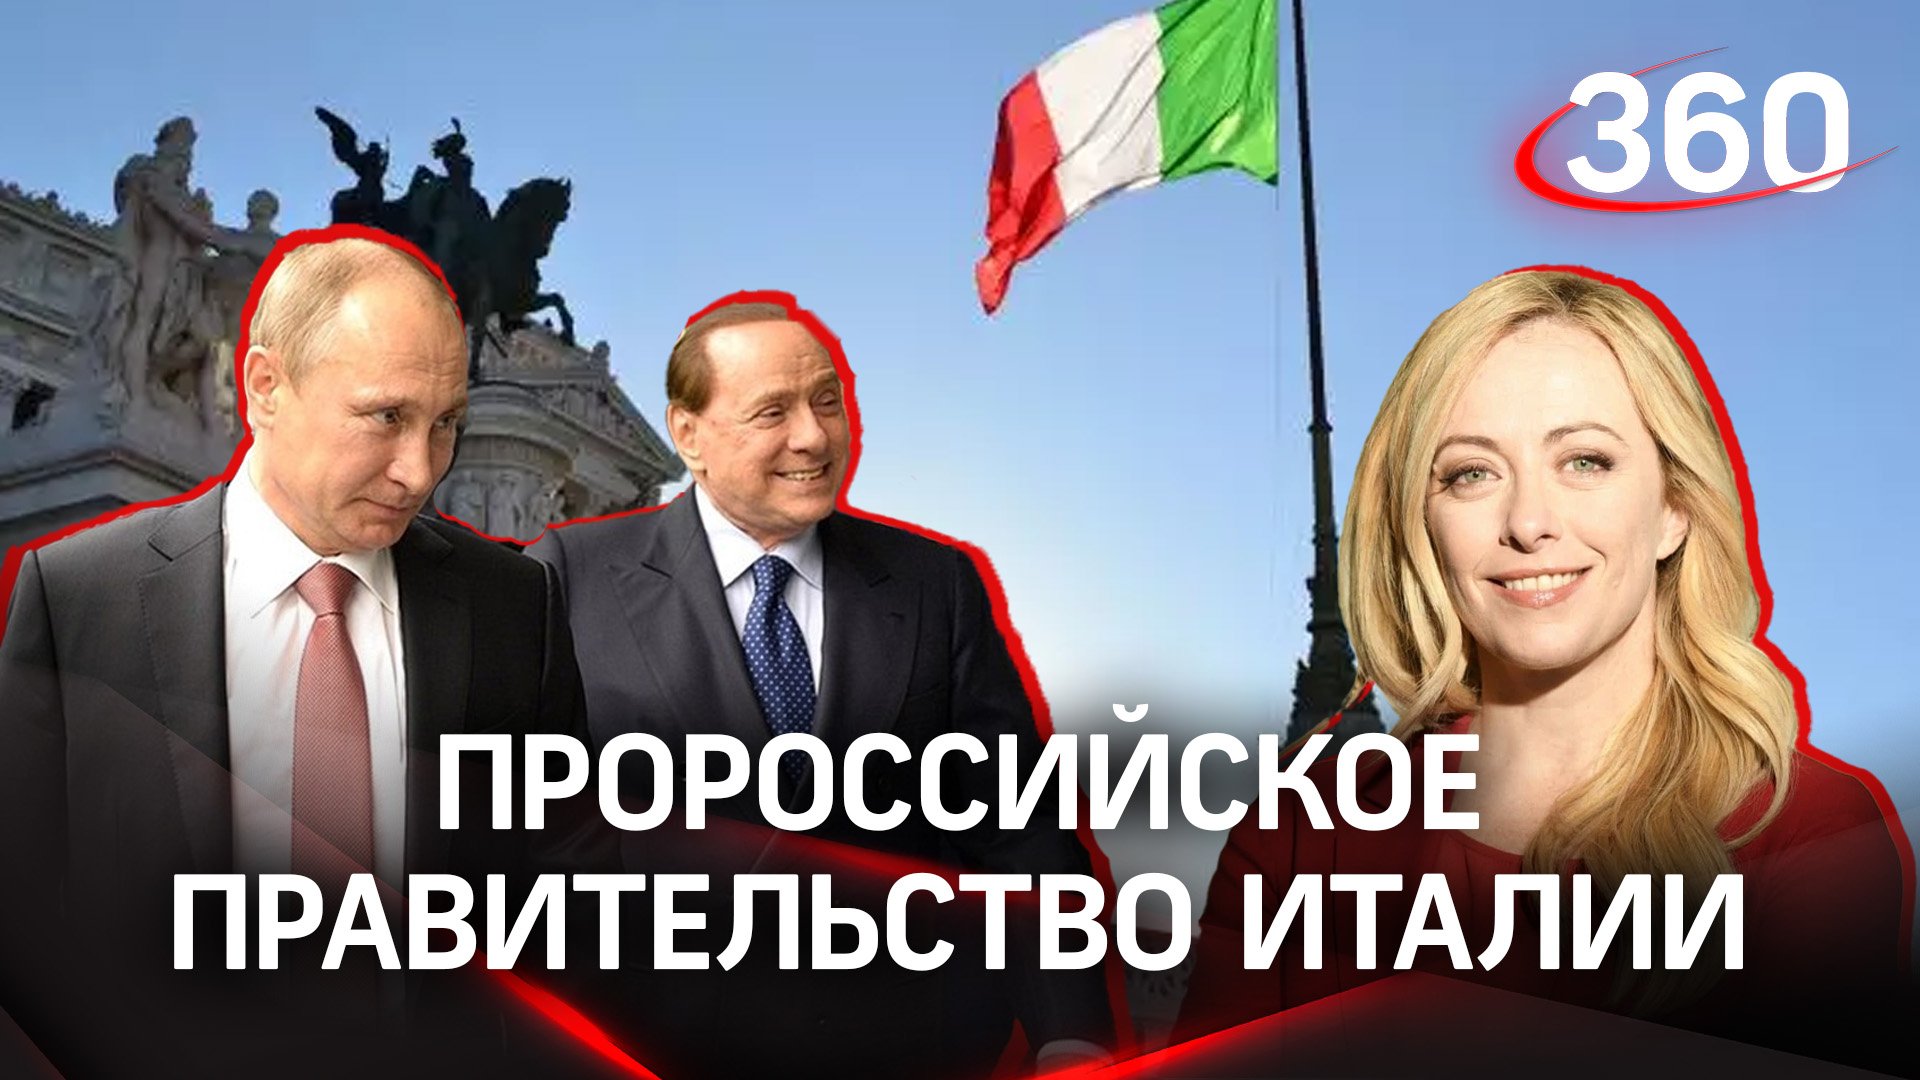 Пророссийское правительство Италии, водка от Путина для Берлускони и ламбруско в ответ